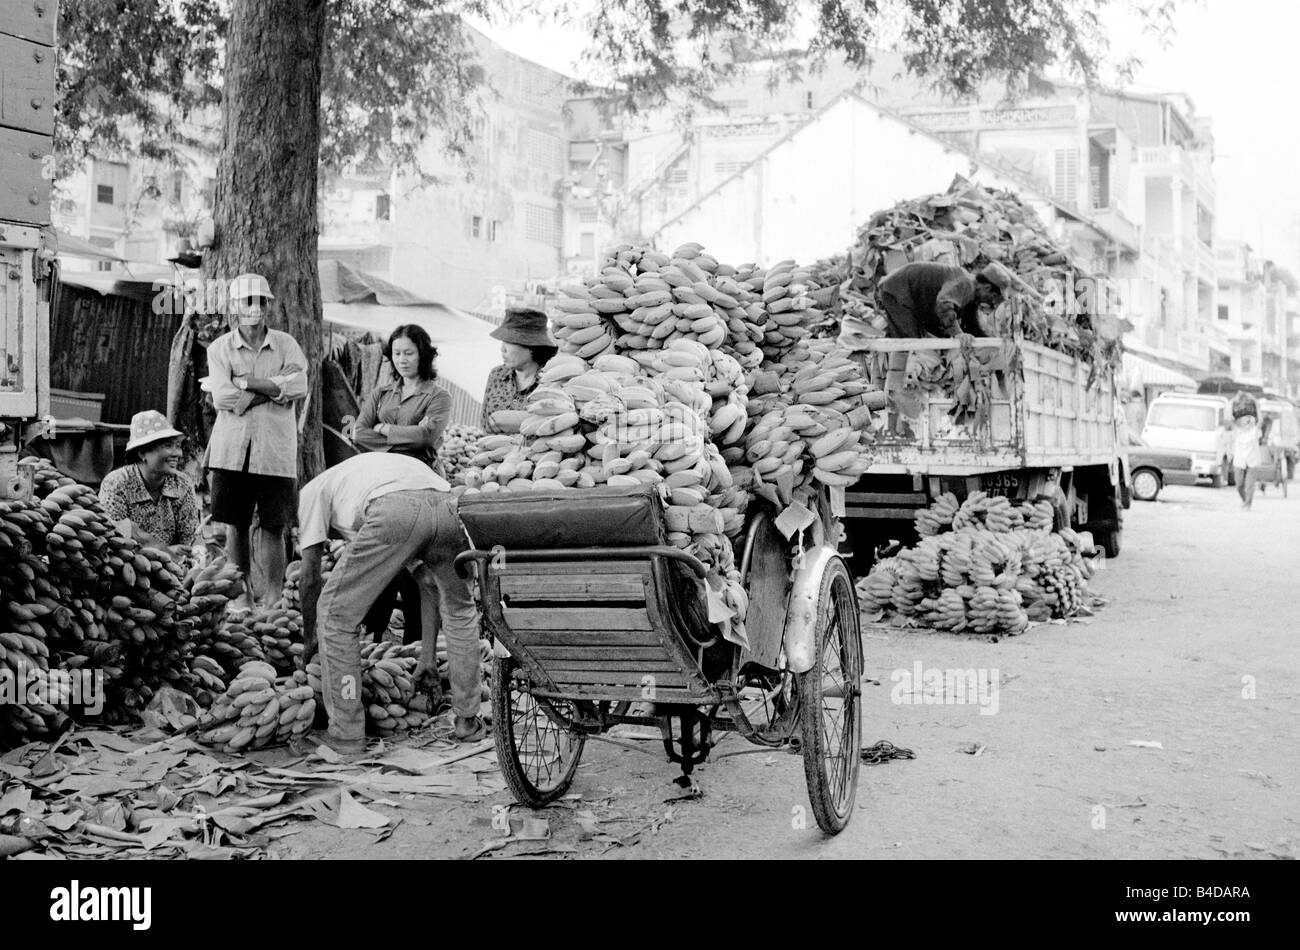 Jan 24, 2003 - Banane di essere scaricati dai venditori di frutta in una strada nel centro di Phnom Penh. Foto Stock